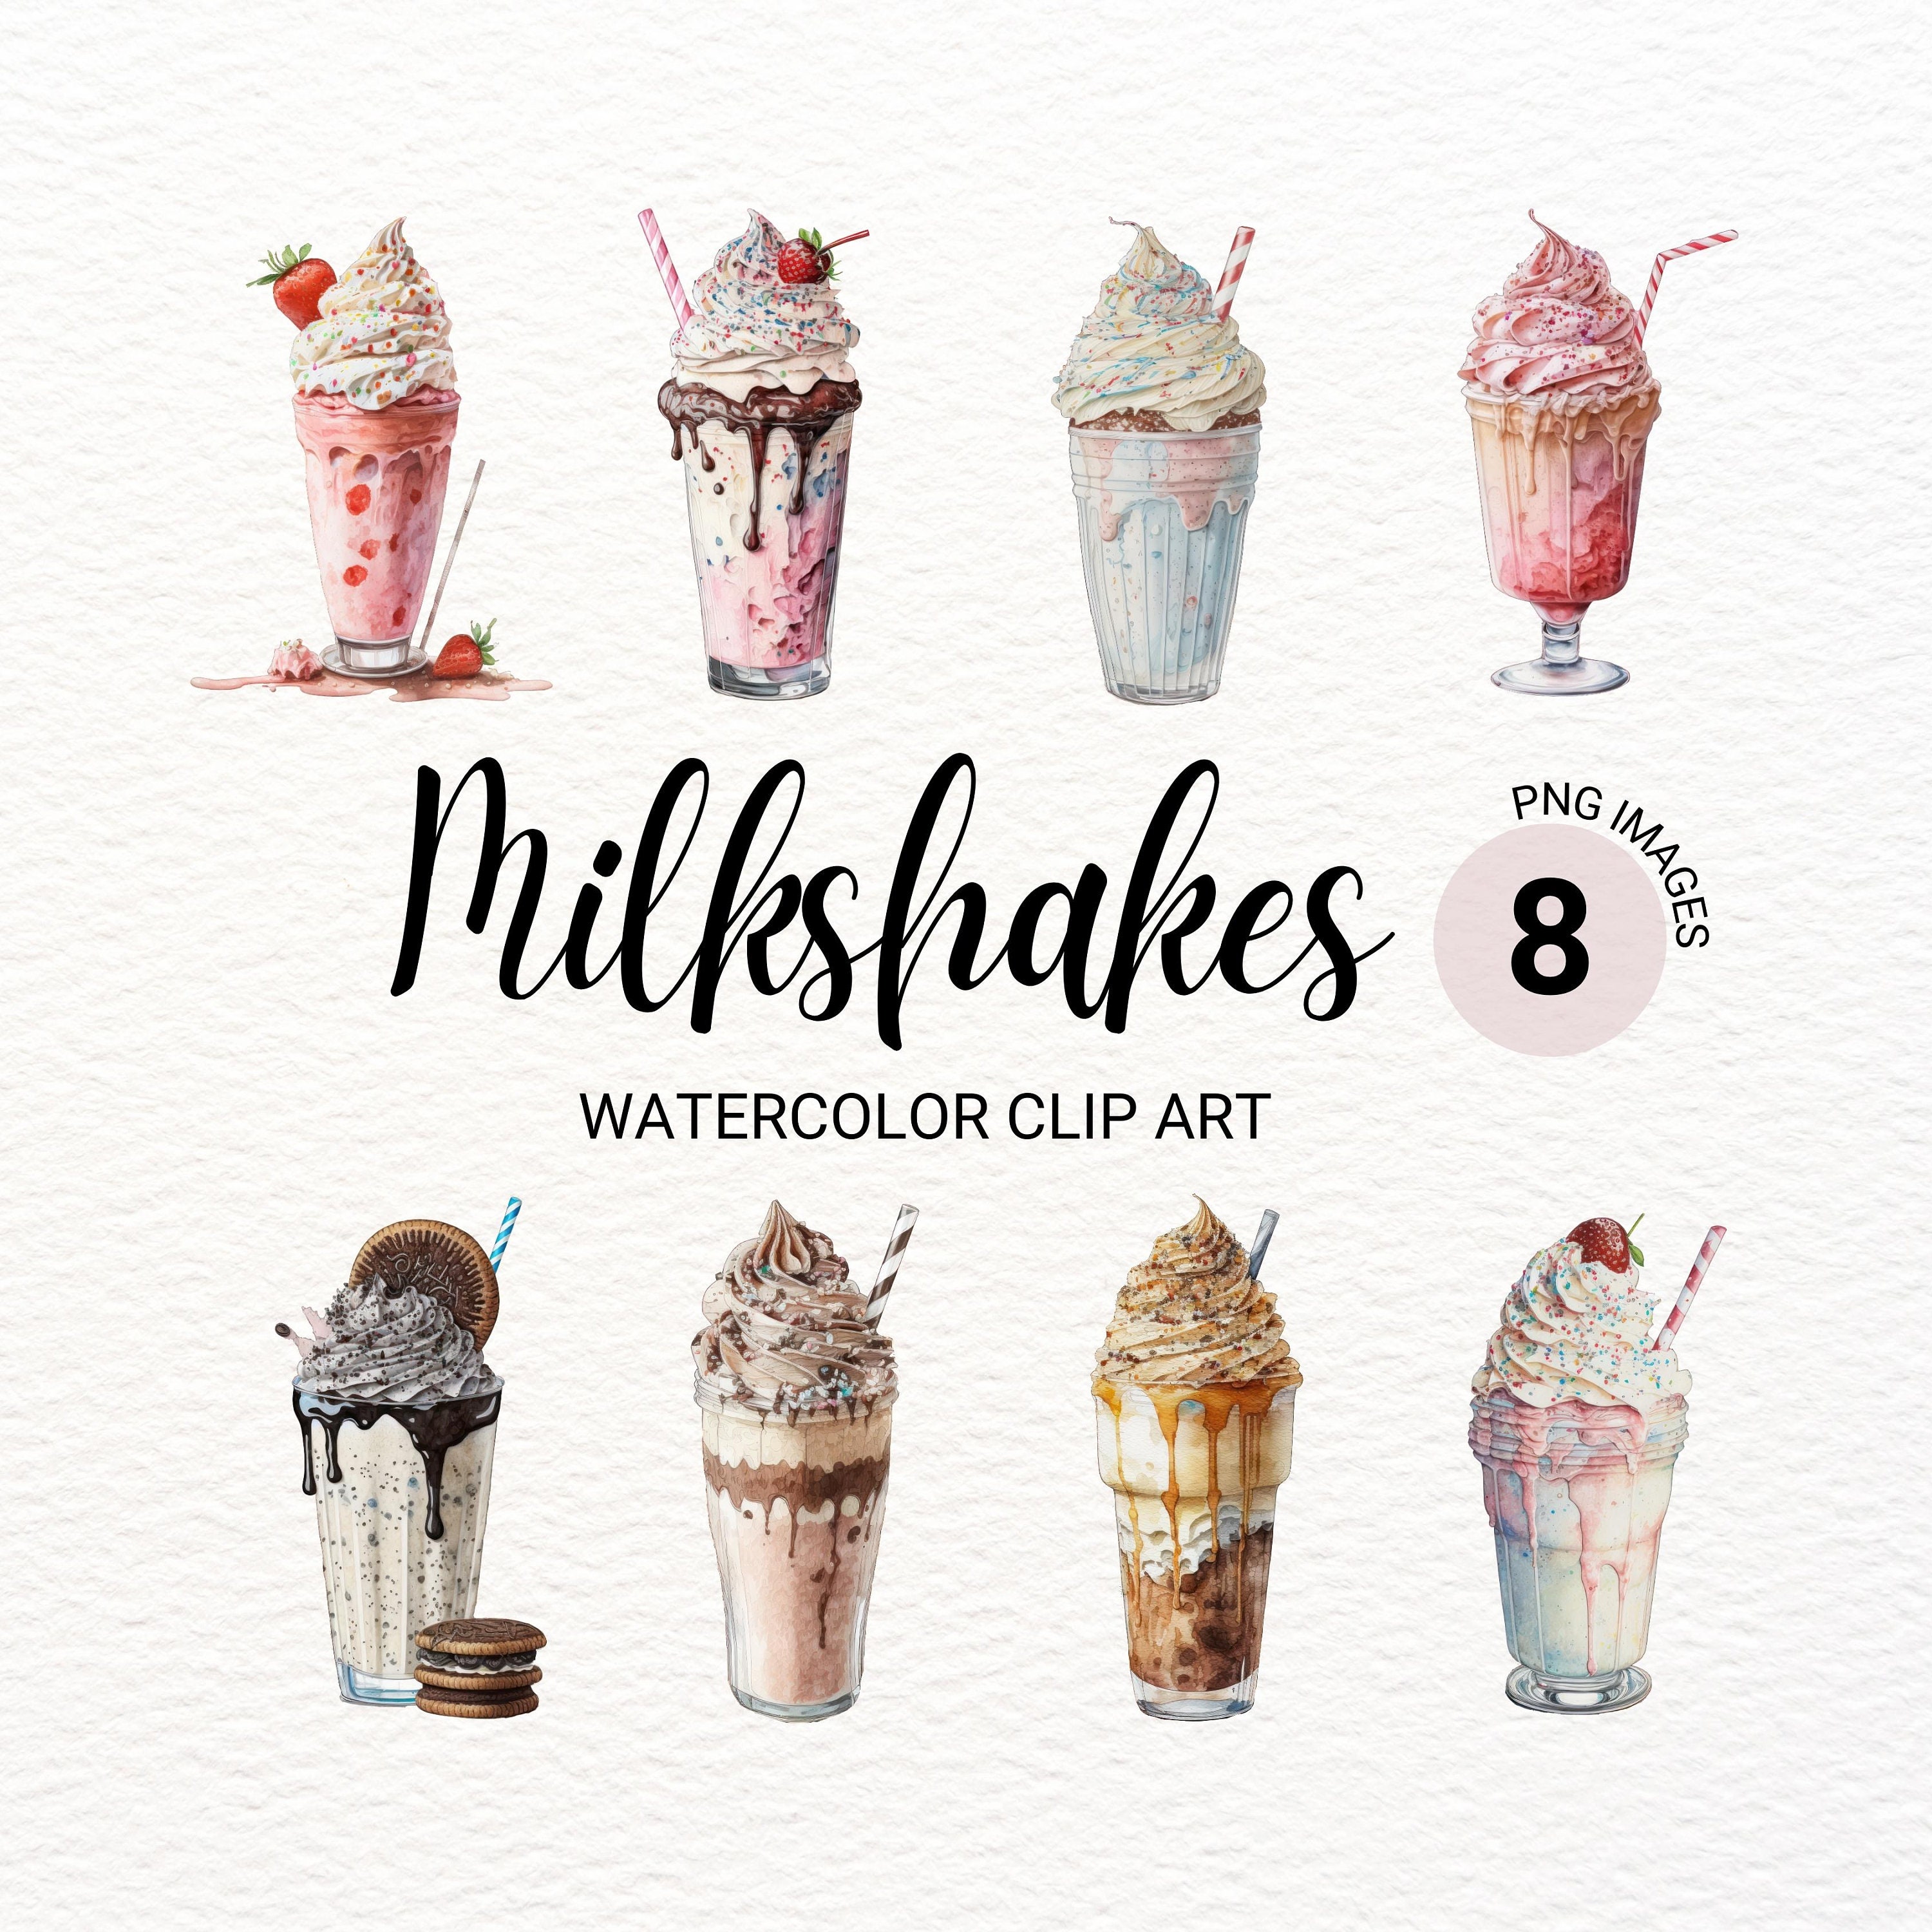 holiday gifts – Milkshake USA